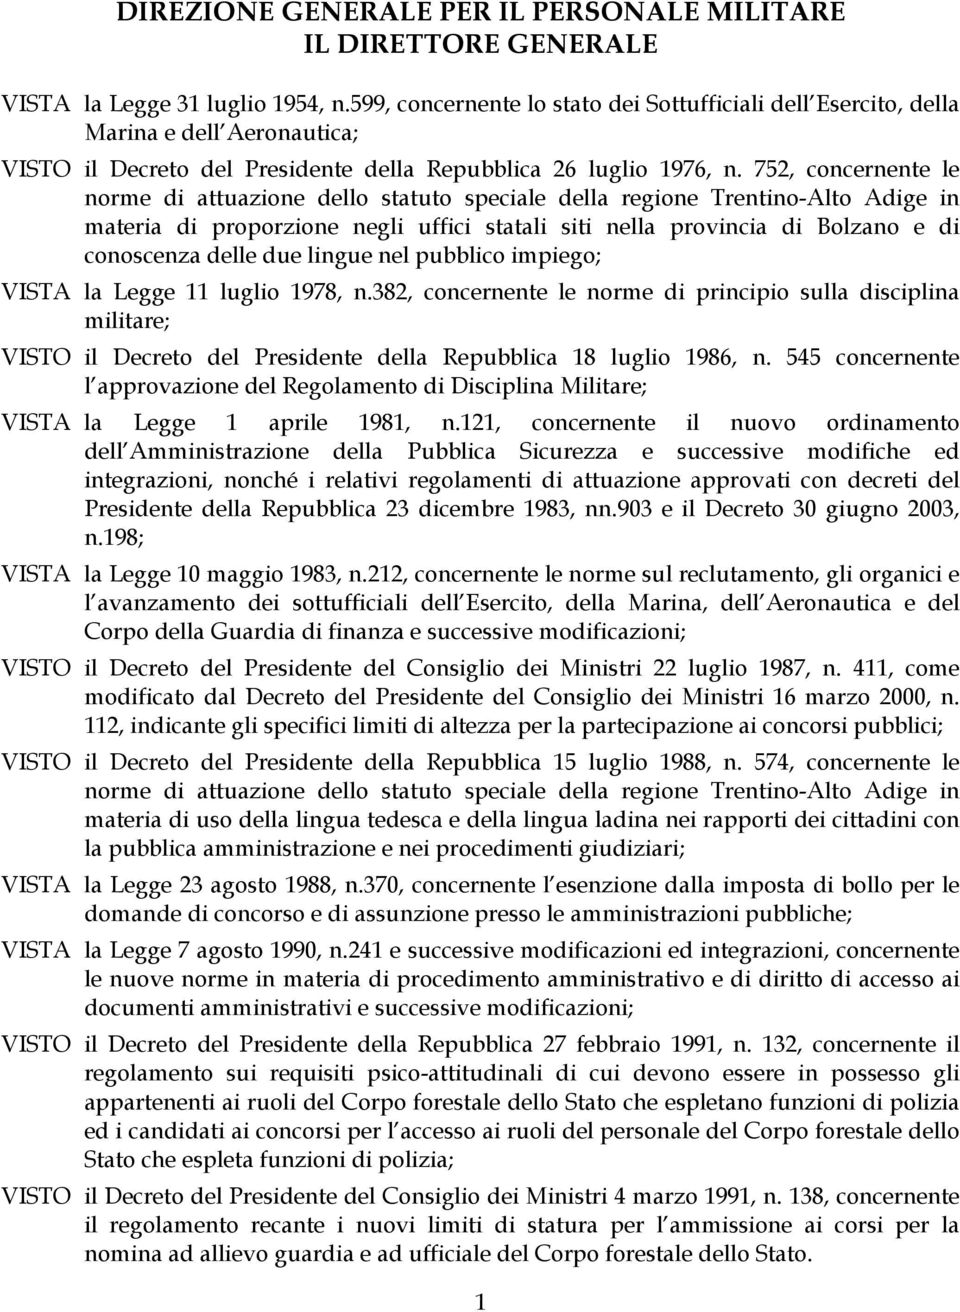 752, concernente le norme di attuazione dello statuto speciale della regione Trentino-Alto Adige in materia di proporzione negli uffici statali siti nella provincia di Bolzano e di conoscenza delle